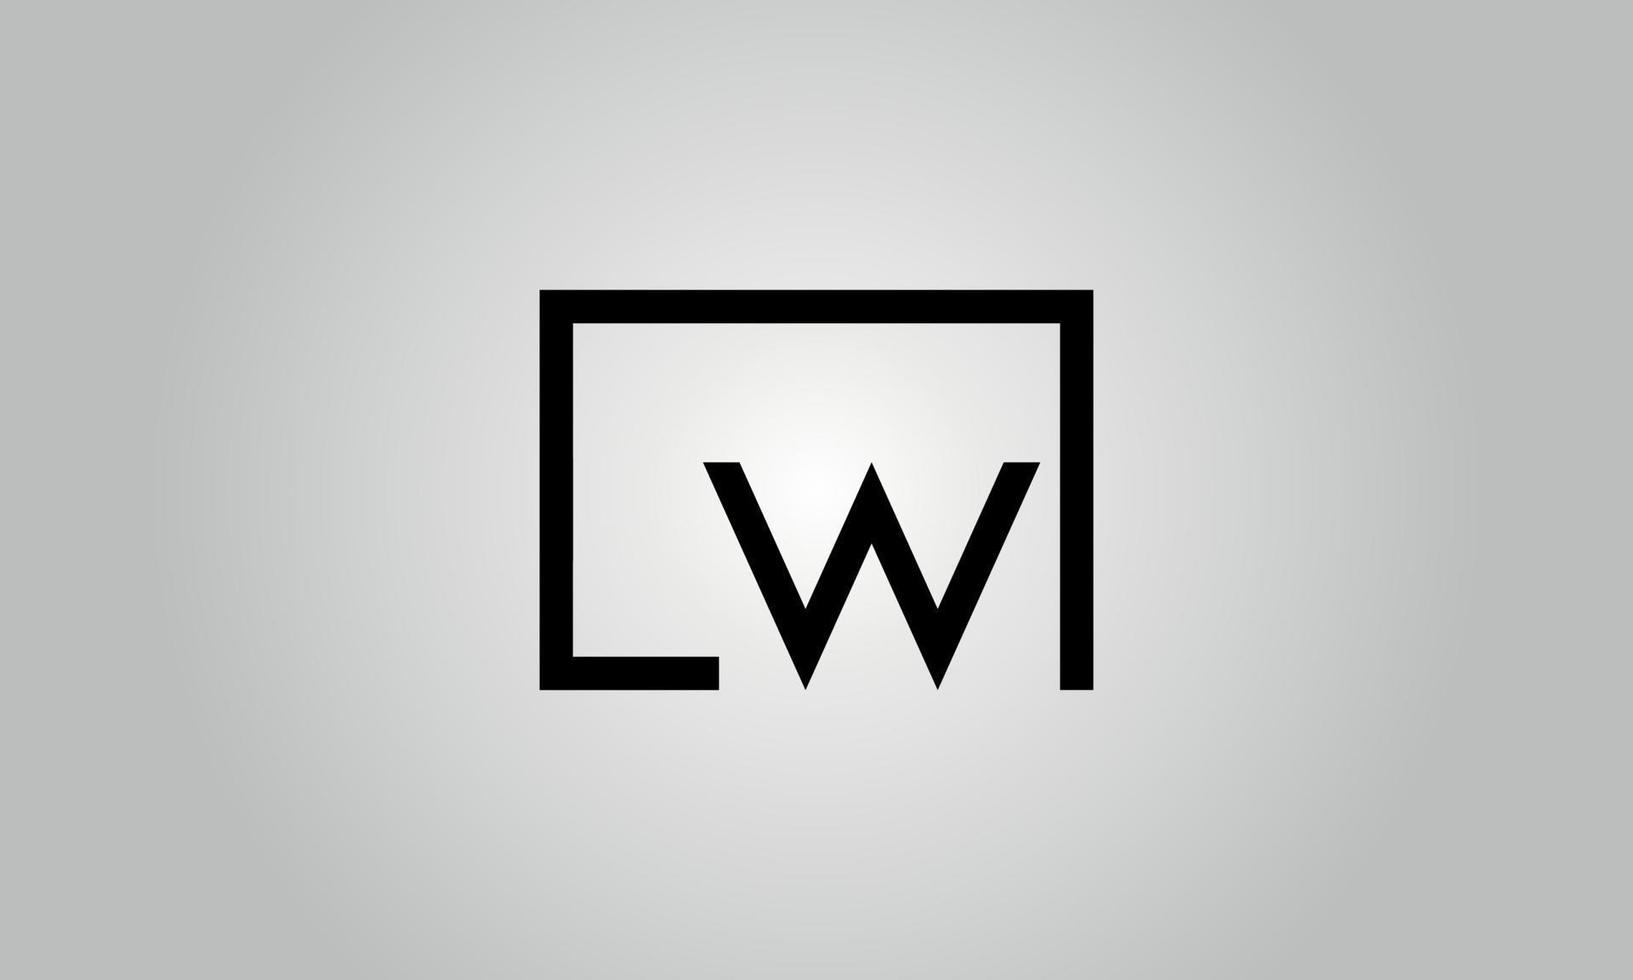 brief lw logo ontwerp. lw logo met plein vorm in zwart kleuren vector vrij vector sjabloon.